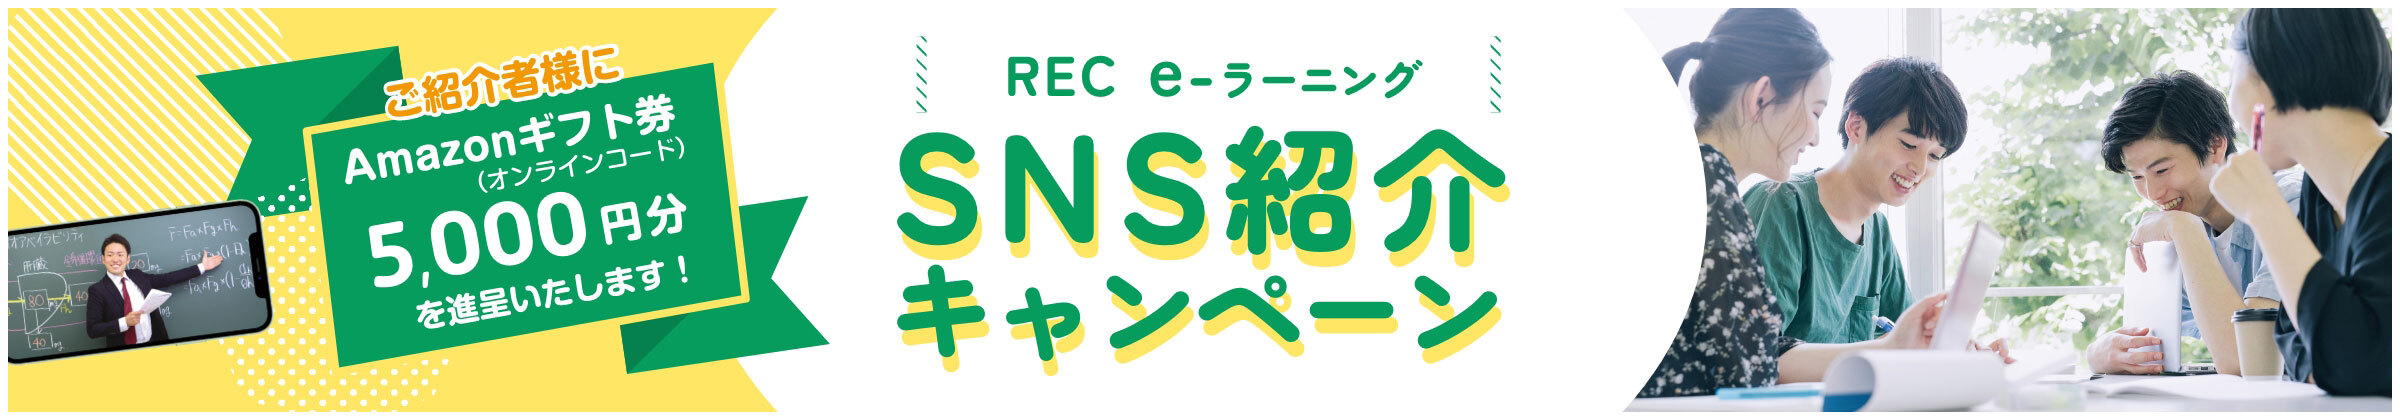 REC e-ラーニング SNS紹介キャンペーン ご紹介者様にAmazonギフト券5,000円分を進呈いたします！